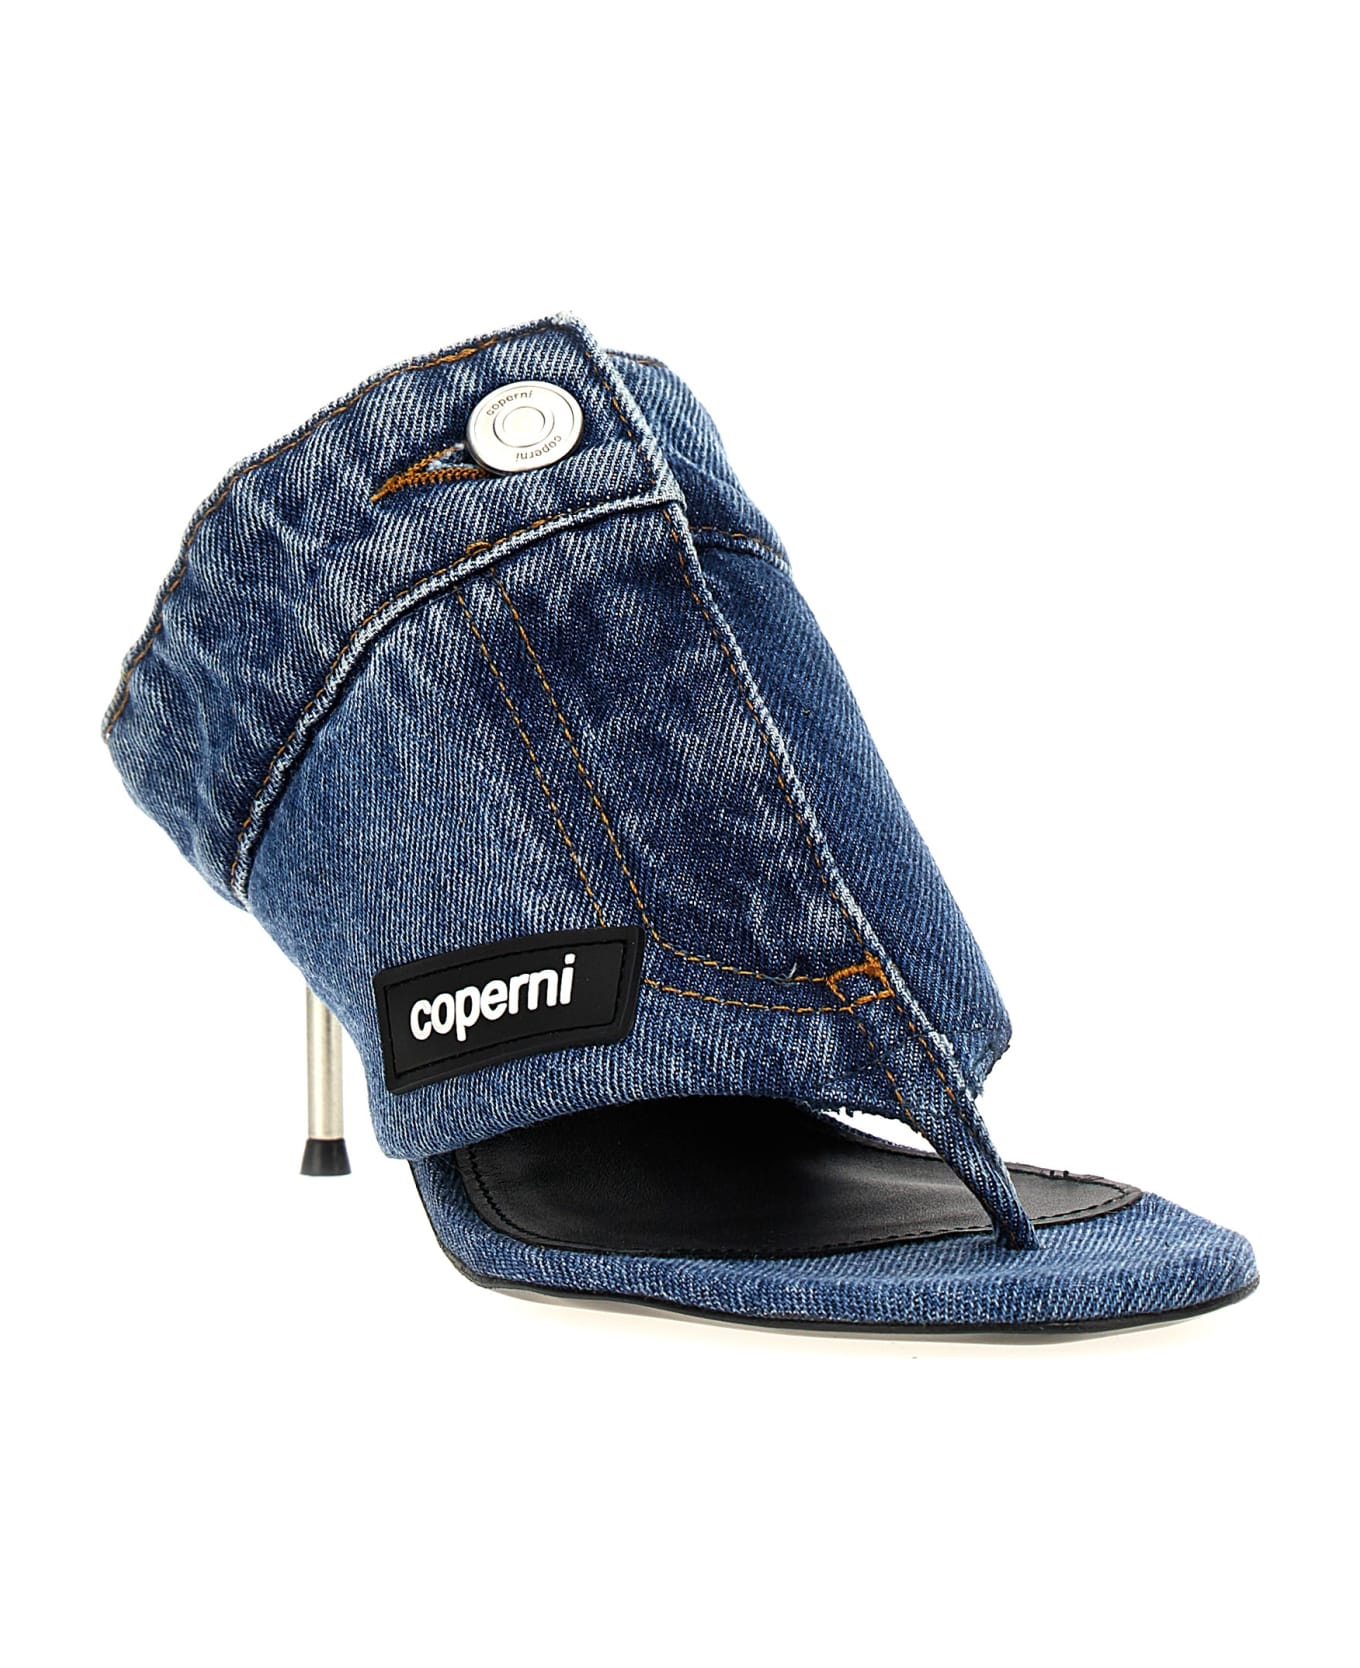 Coperni 'denim Open Thong' Sandals - Light Blue サンダル